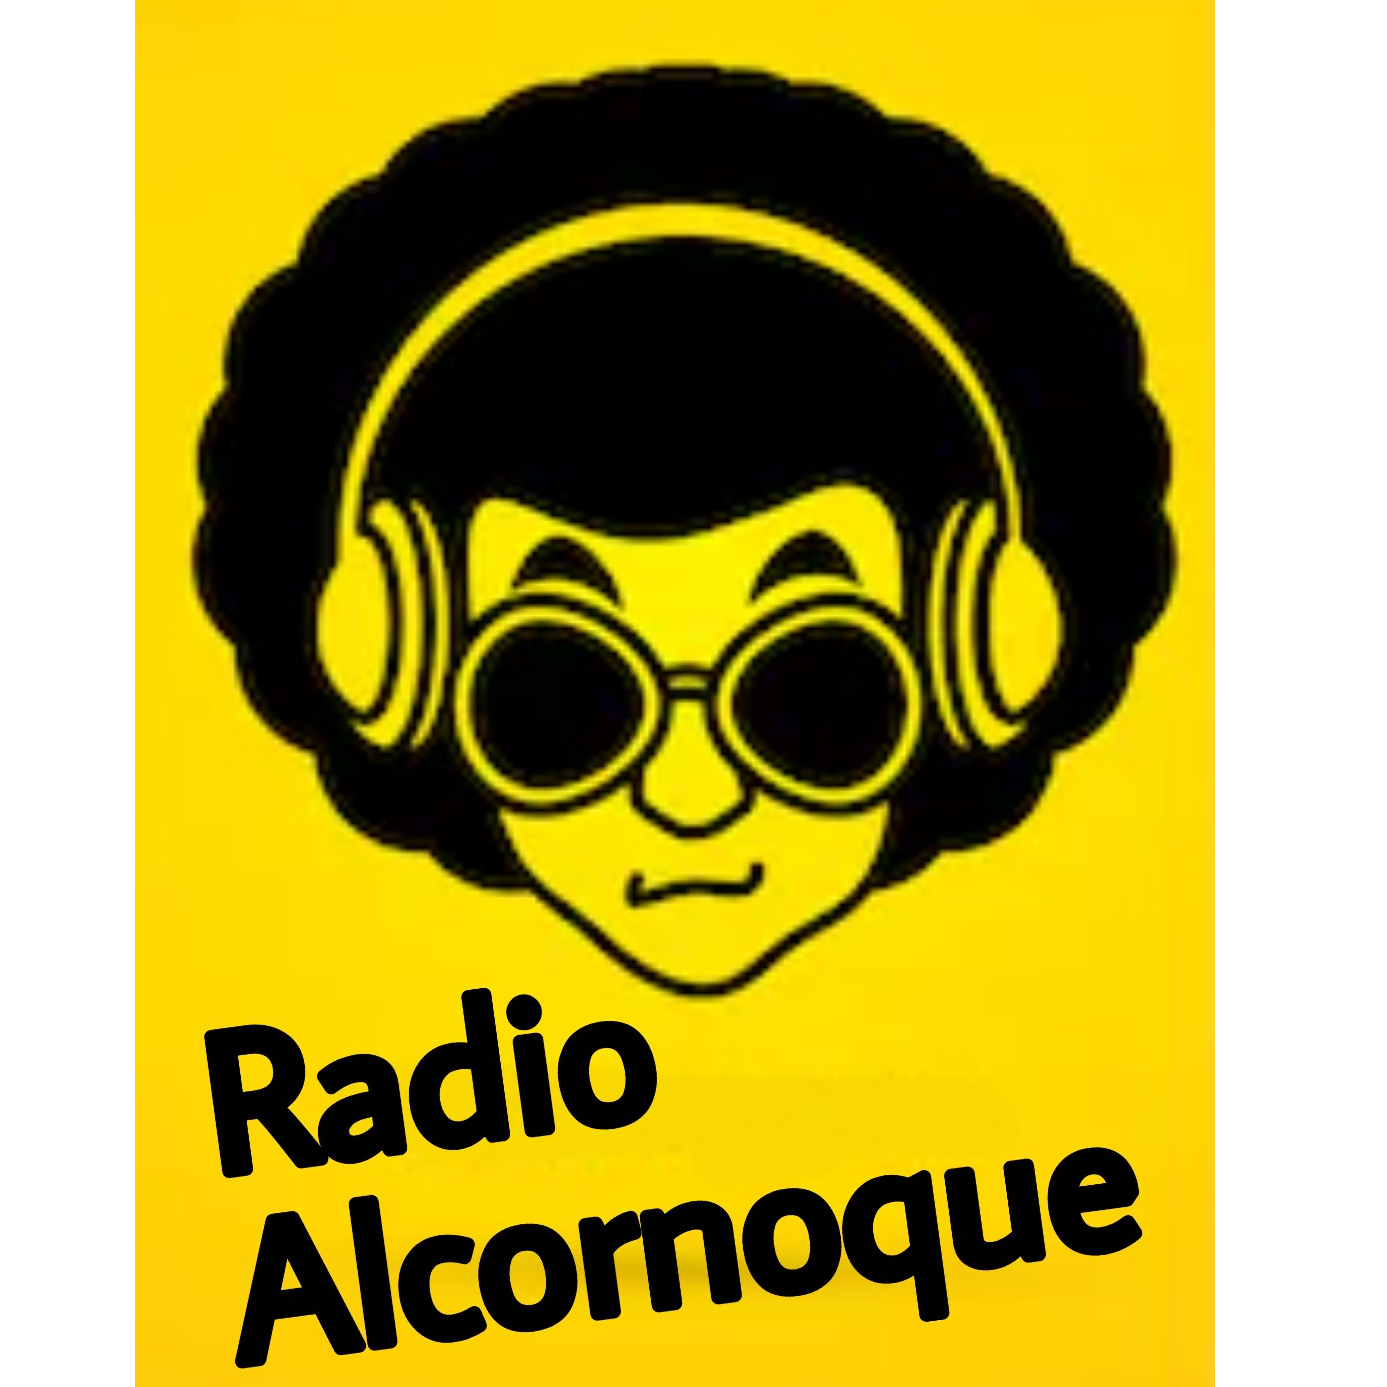 Radio Alcornoque